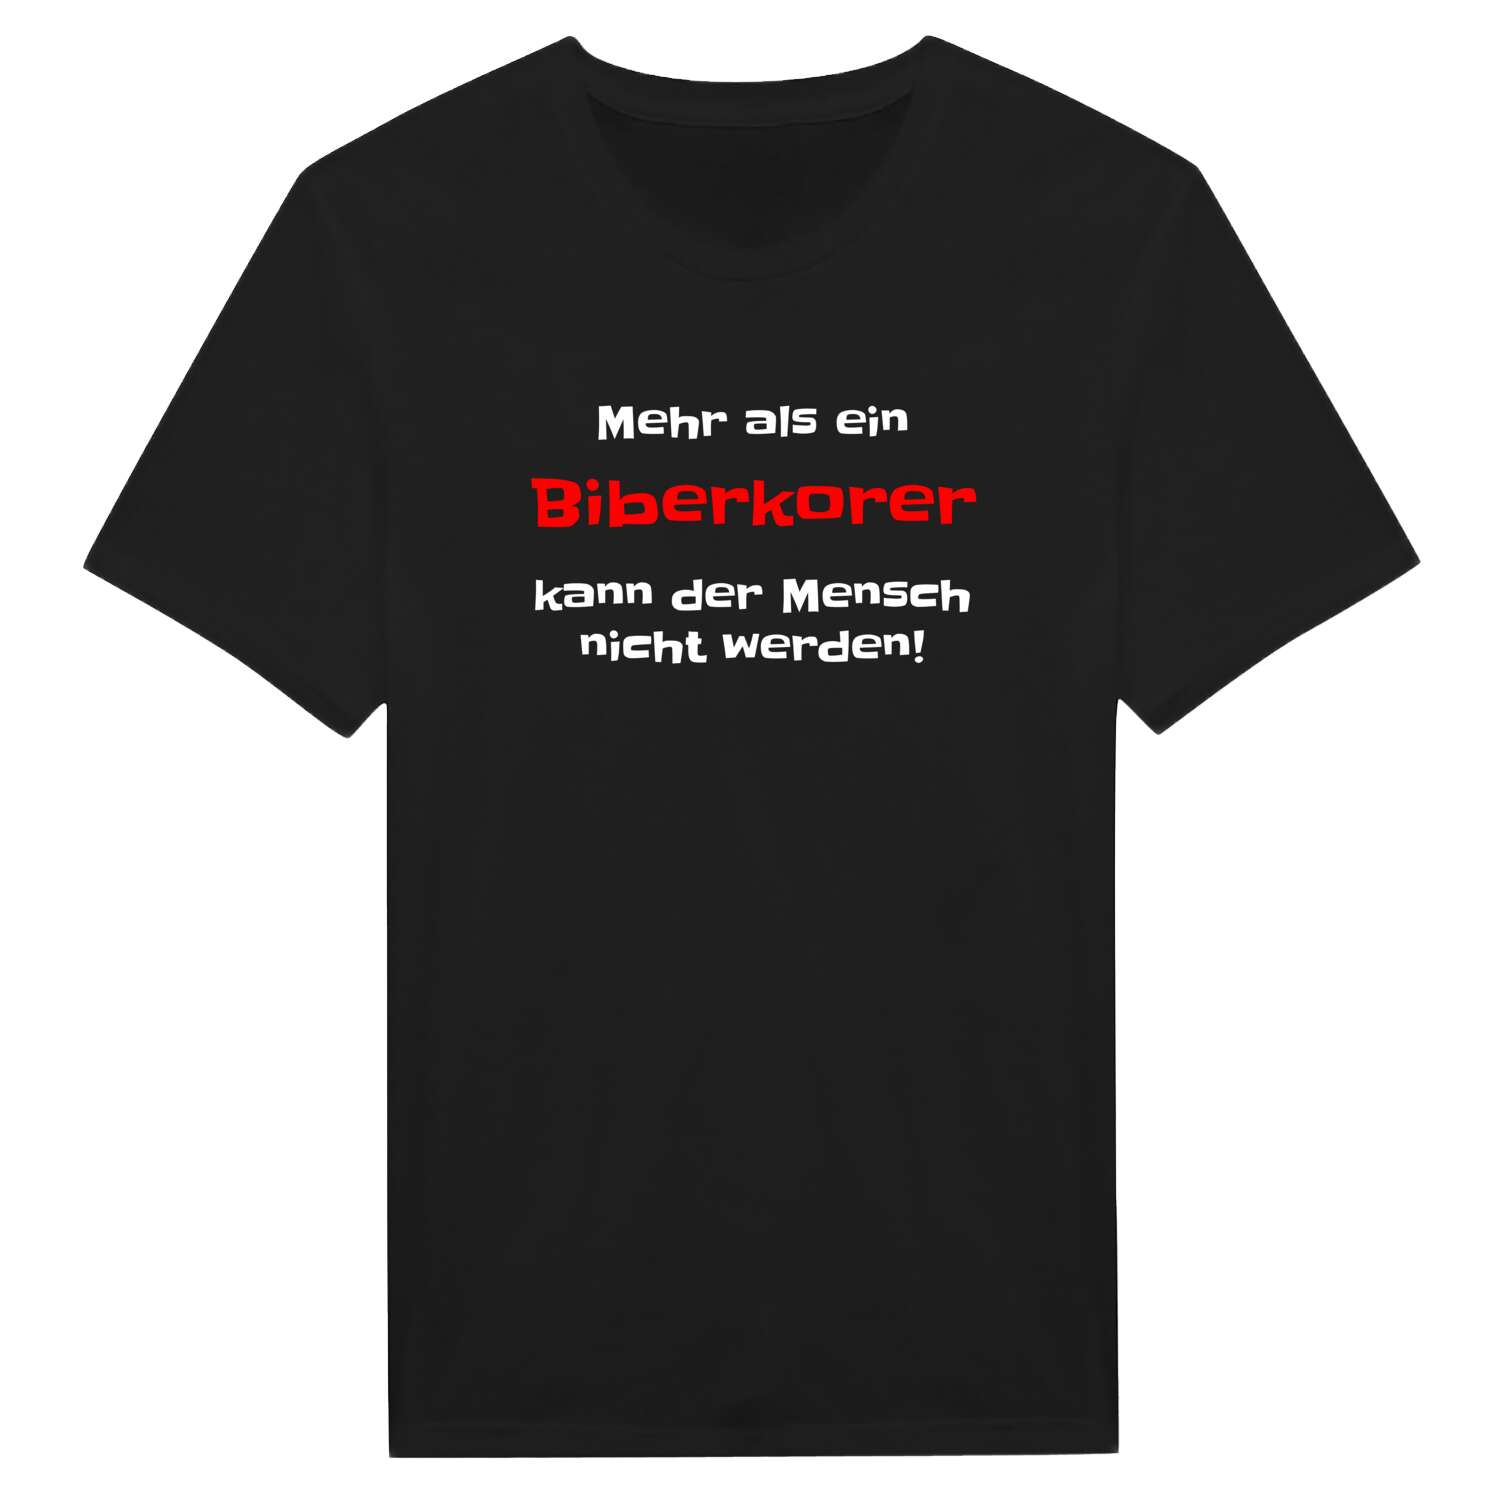 Biberkor T-Shirt »Mehr als ein«